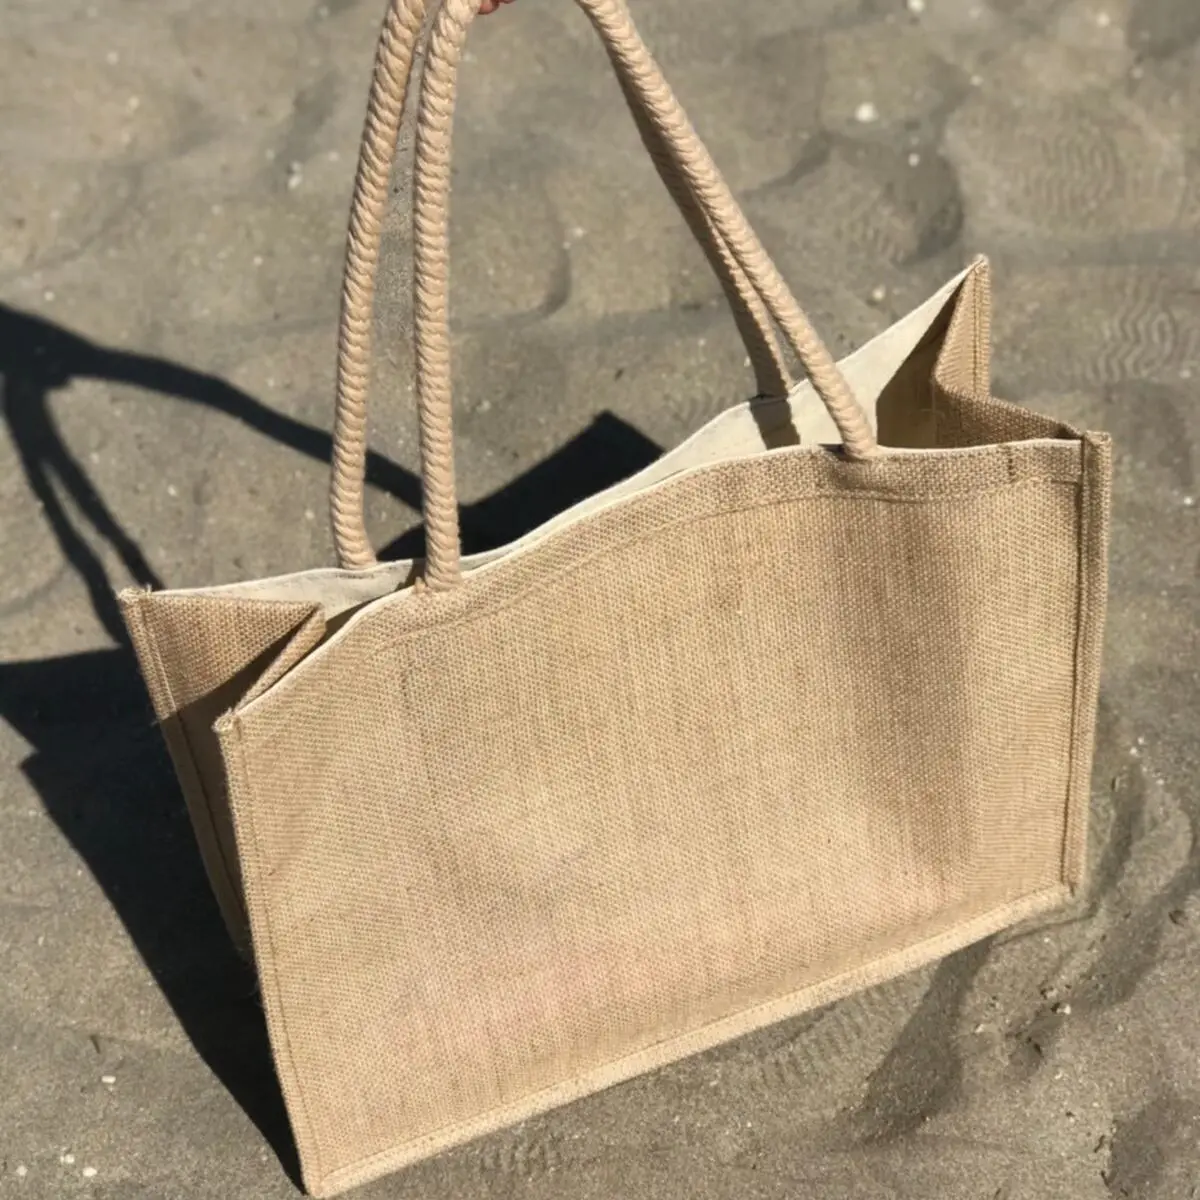 Пляжная сумка, соломенная плетеная пляжная сумка, большая пляжная сумка с широким и внутренним карманом, стильная и удобная, подходит для 2-3 больших полотенец, V